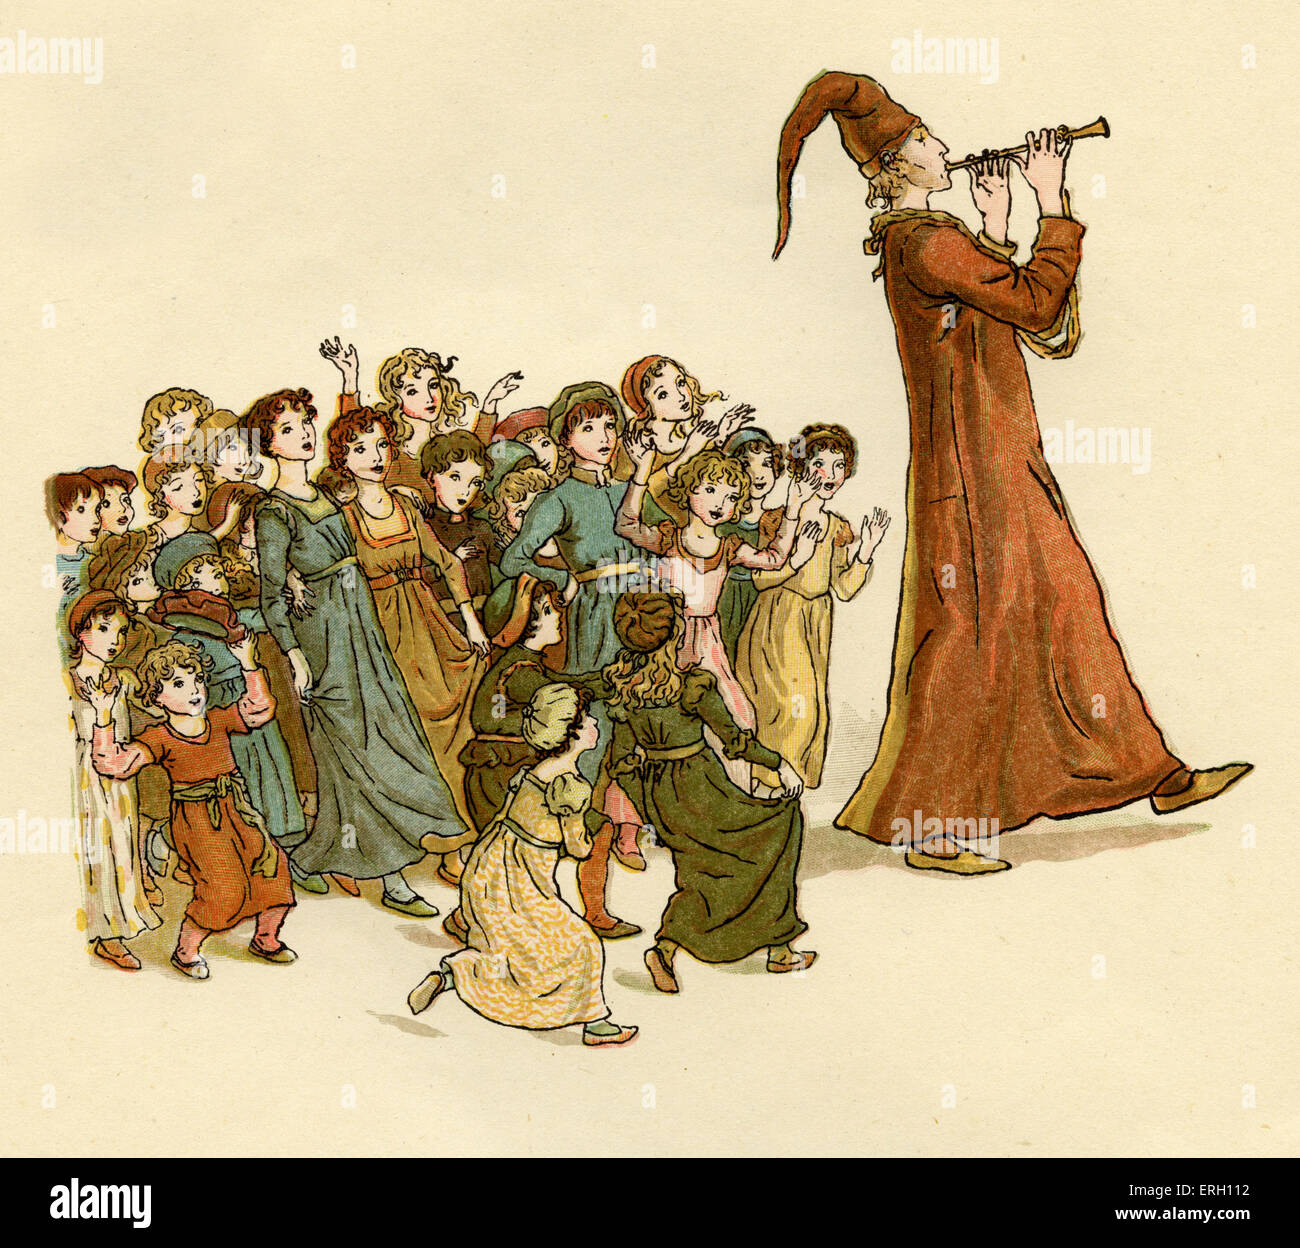 Il Pifferaio di Hamelin: 'La meravigliosa musica con grida e risate'. Illustrazione di Kate Greenaway, 1888. KG: inglese Foto Stock